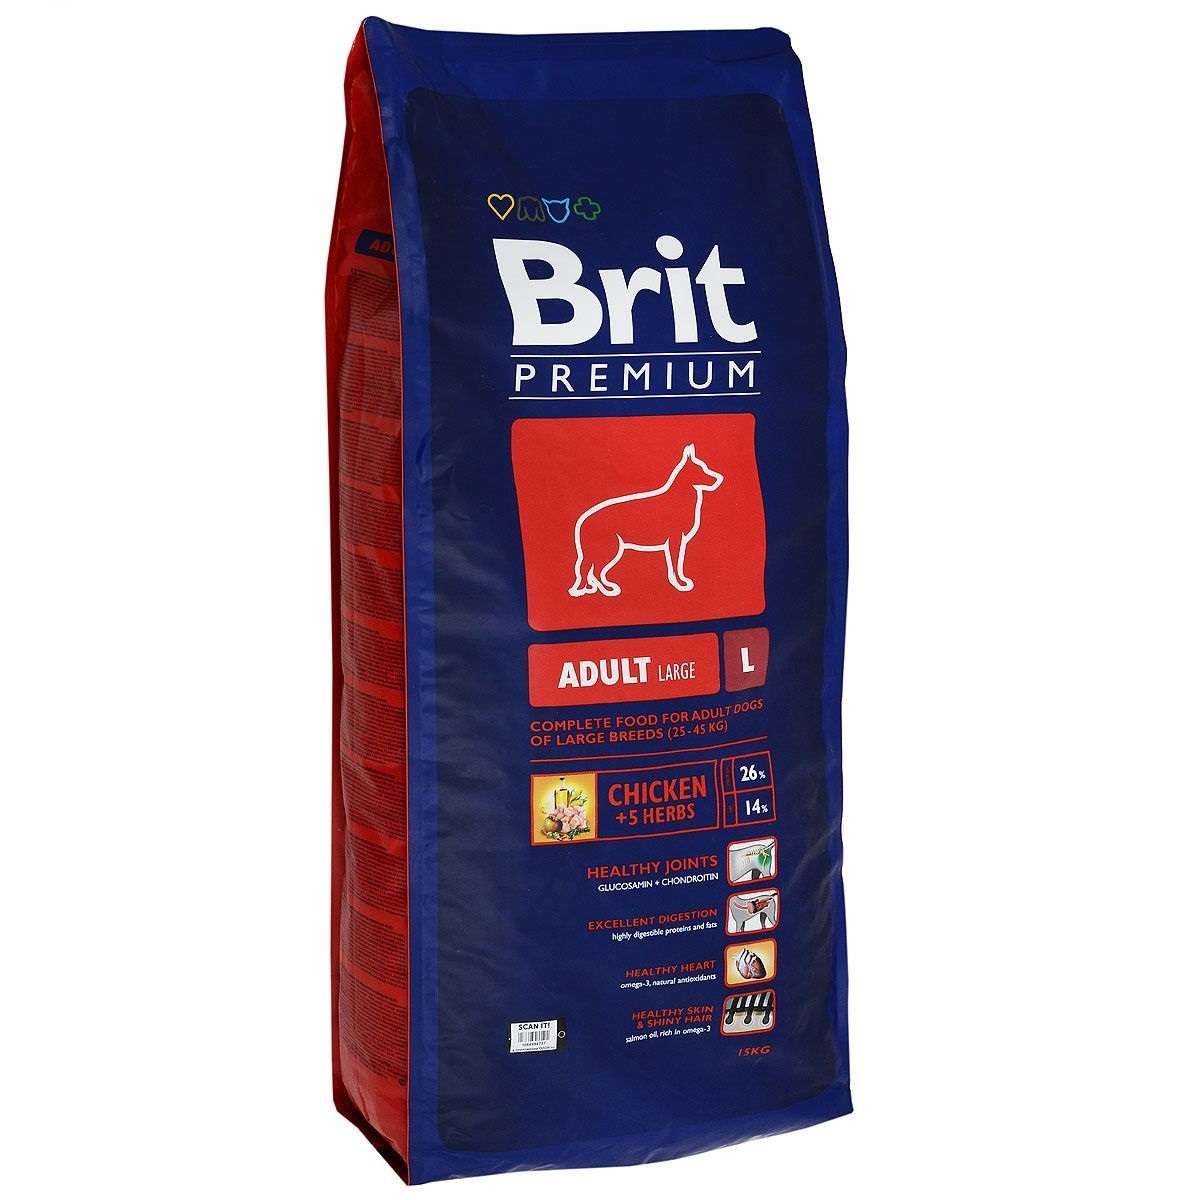 Корм брит 15 кг. Корм для собак Brit Premium. Сухой корм Brit Premium для собак. Брит премиум by nature Эдалт l, для взрослых собак крупных пород, 15 кг. Brit Premium Adult l пород с курицей 15 кг.